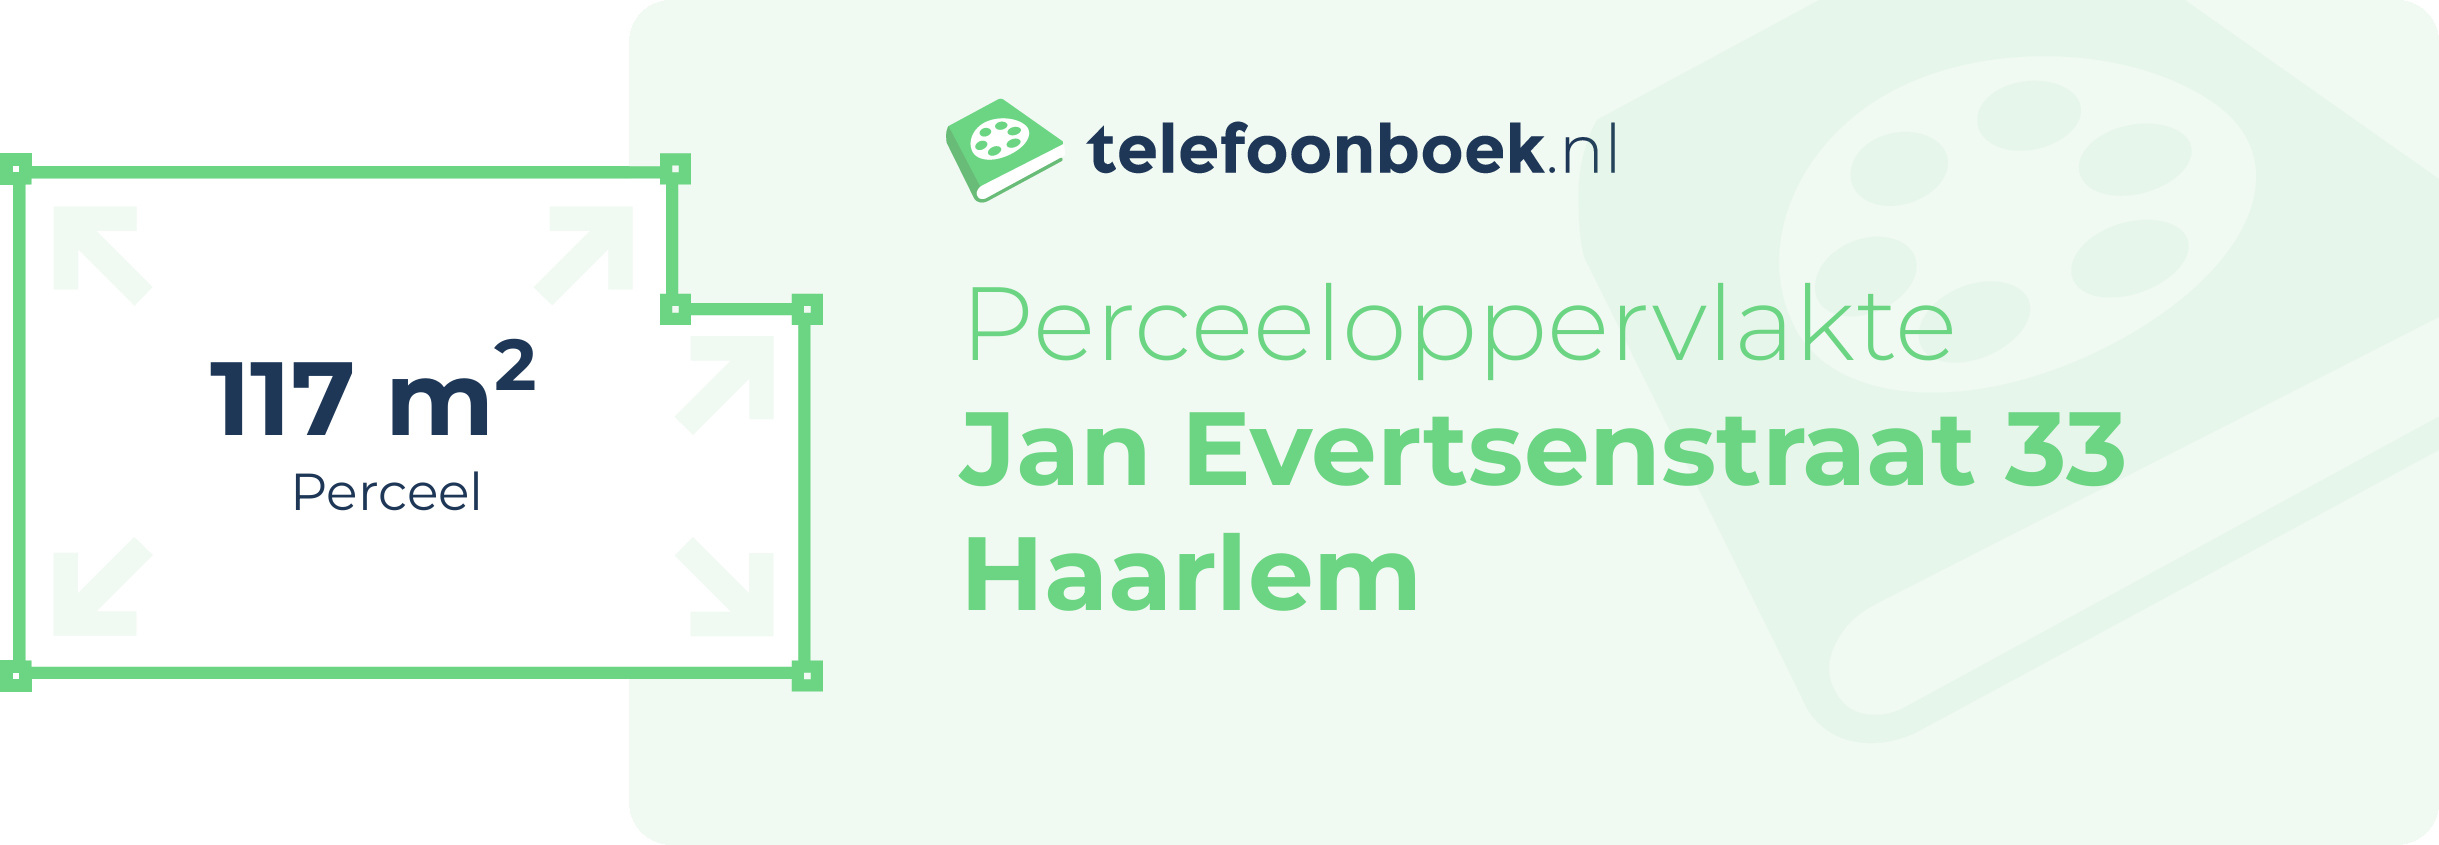 Perceeloppervlakte Jan Evertsenstraat 33 Haarlem